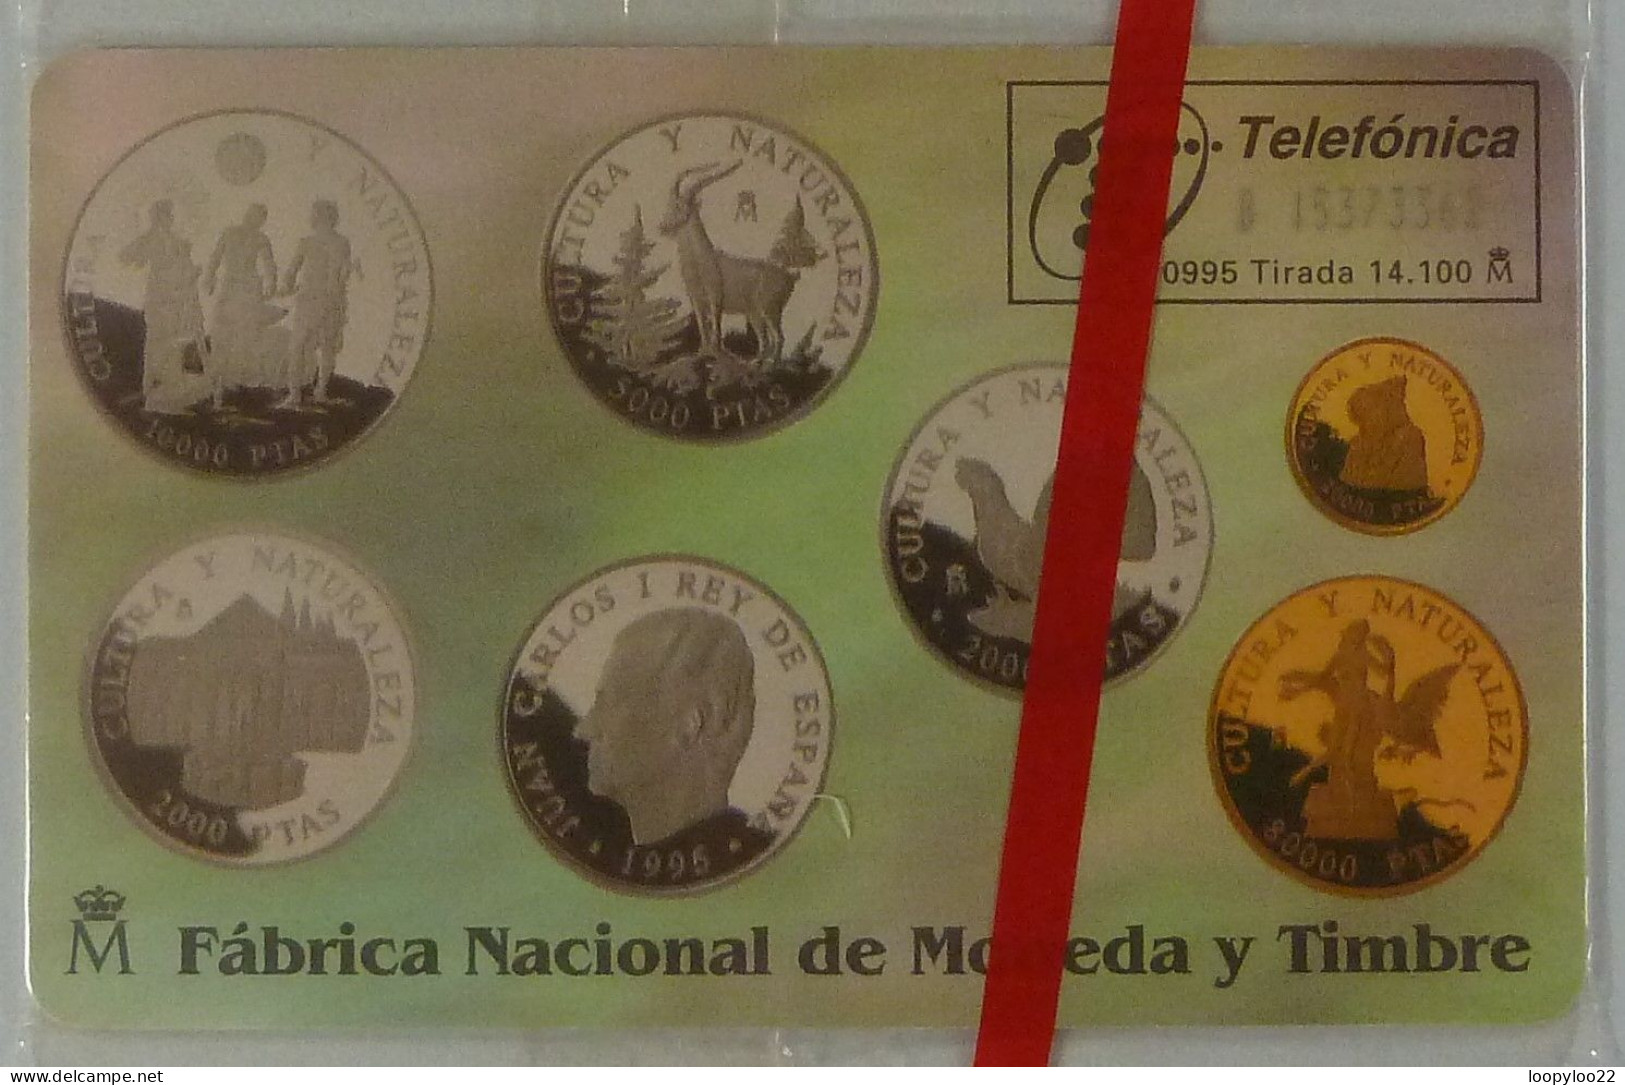 SPAIN - Chip - 100 Units - P-151 - Monedas Conmemoratives II - 09/95 - 14100ex - Mint Blister - Emissions Privées